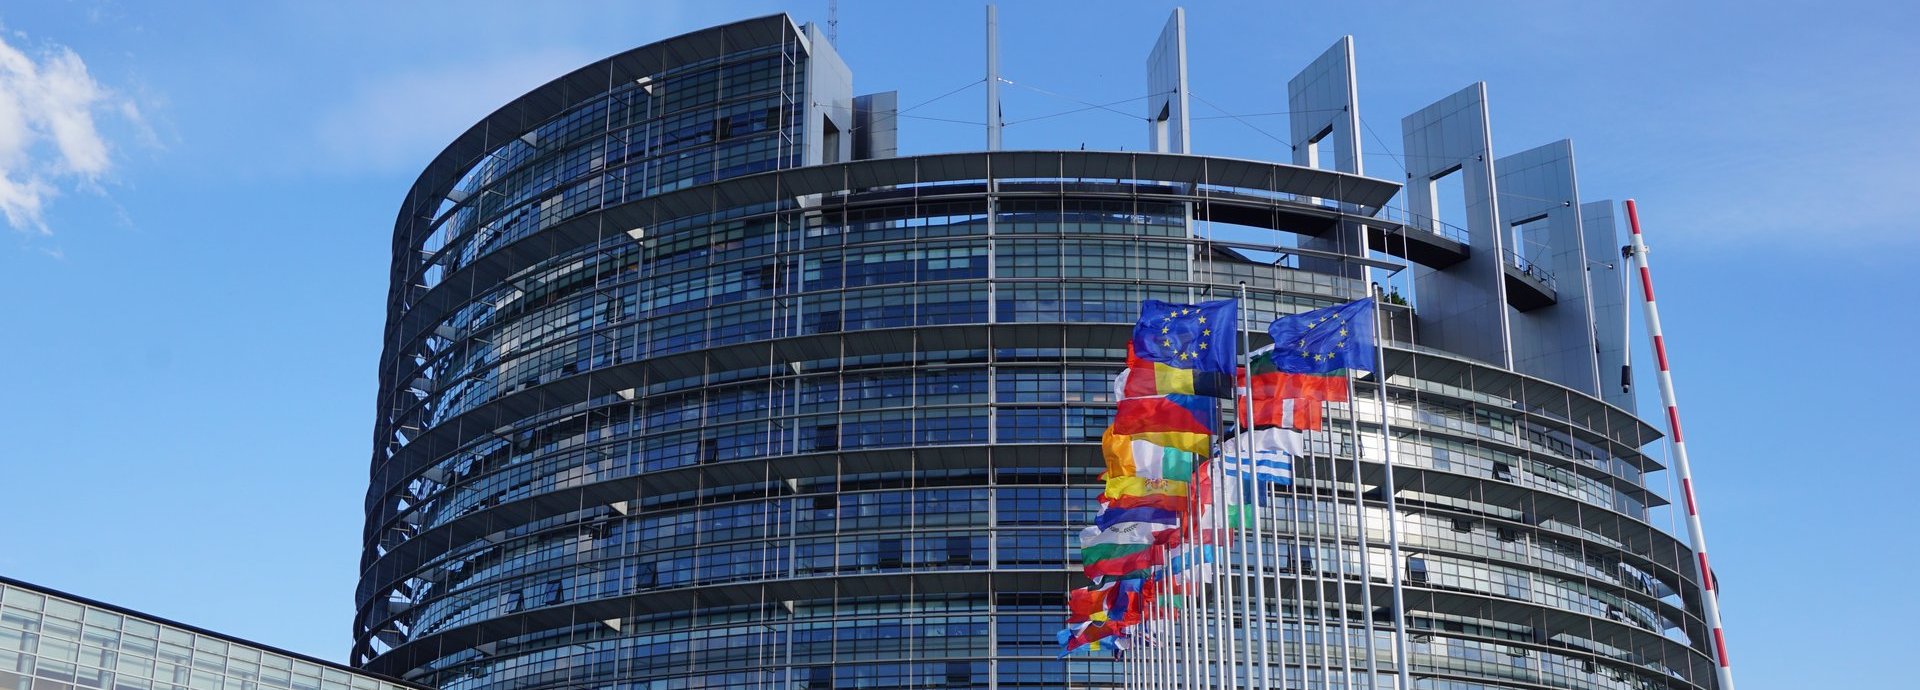 EU Parlamentsgebäude mit blauem Himmel und den Flaggen der europäischen Mitgliedsstaaten